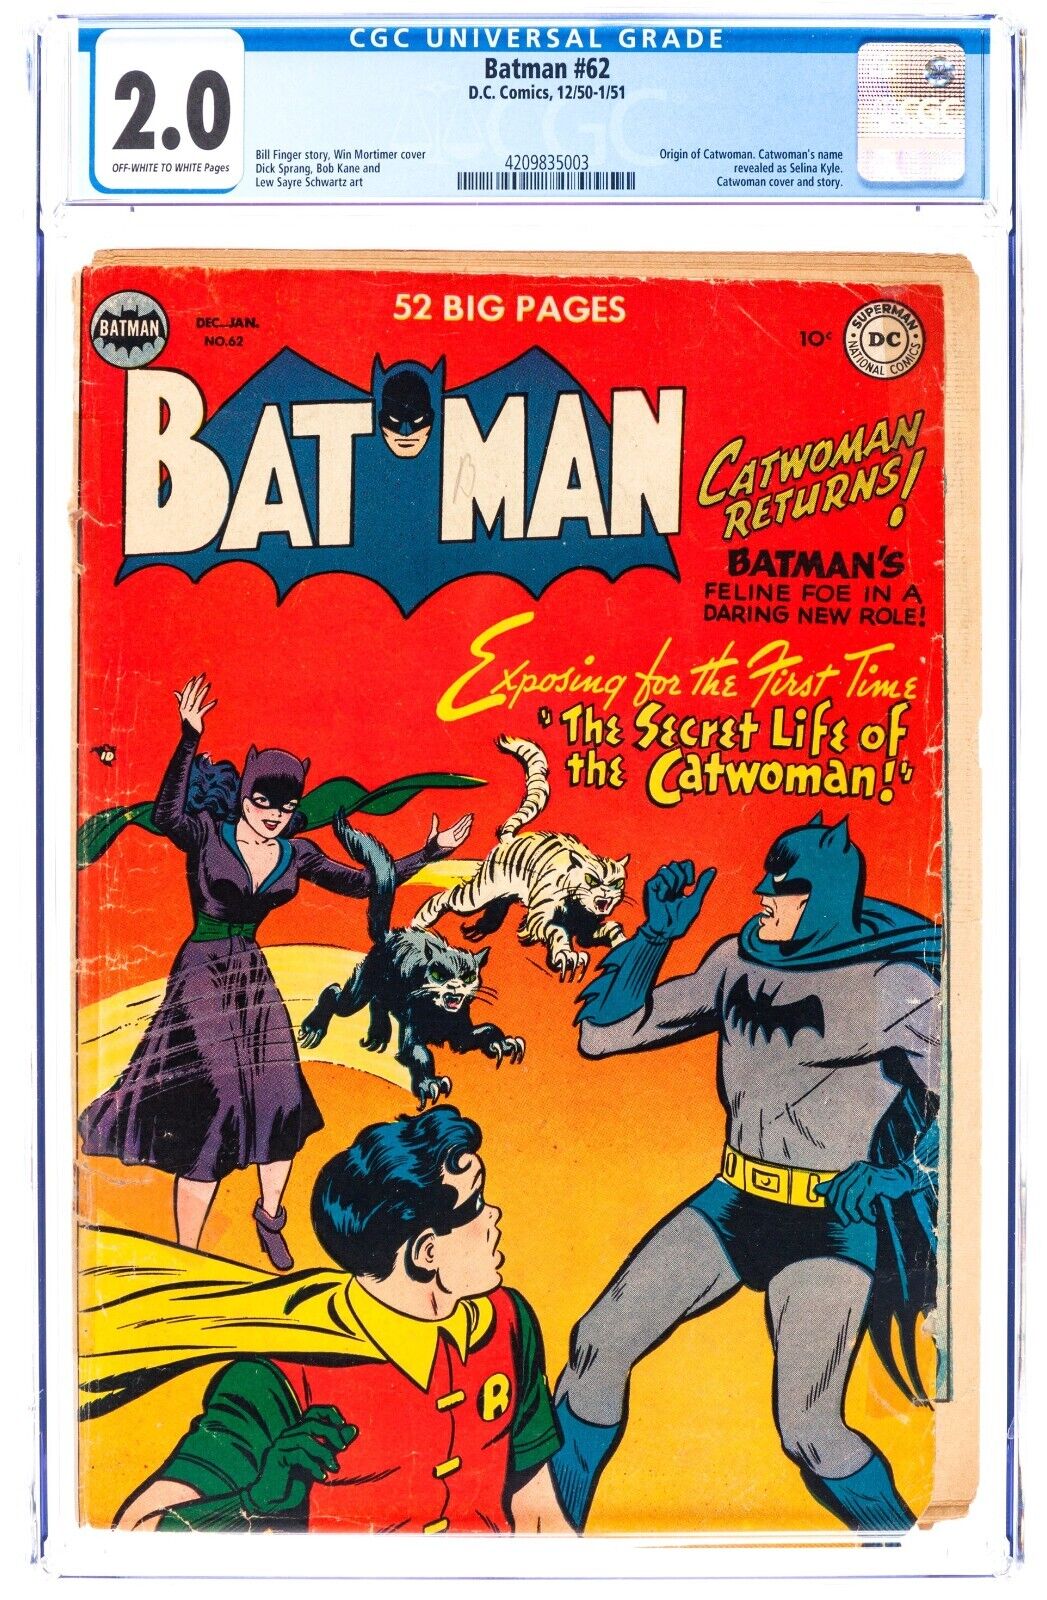 Batman #62 (Dec 1950-Jan 1951, D.C. Comics) CGC 2.0 GD | 4209835003